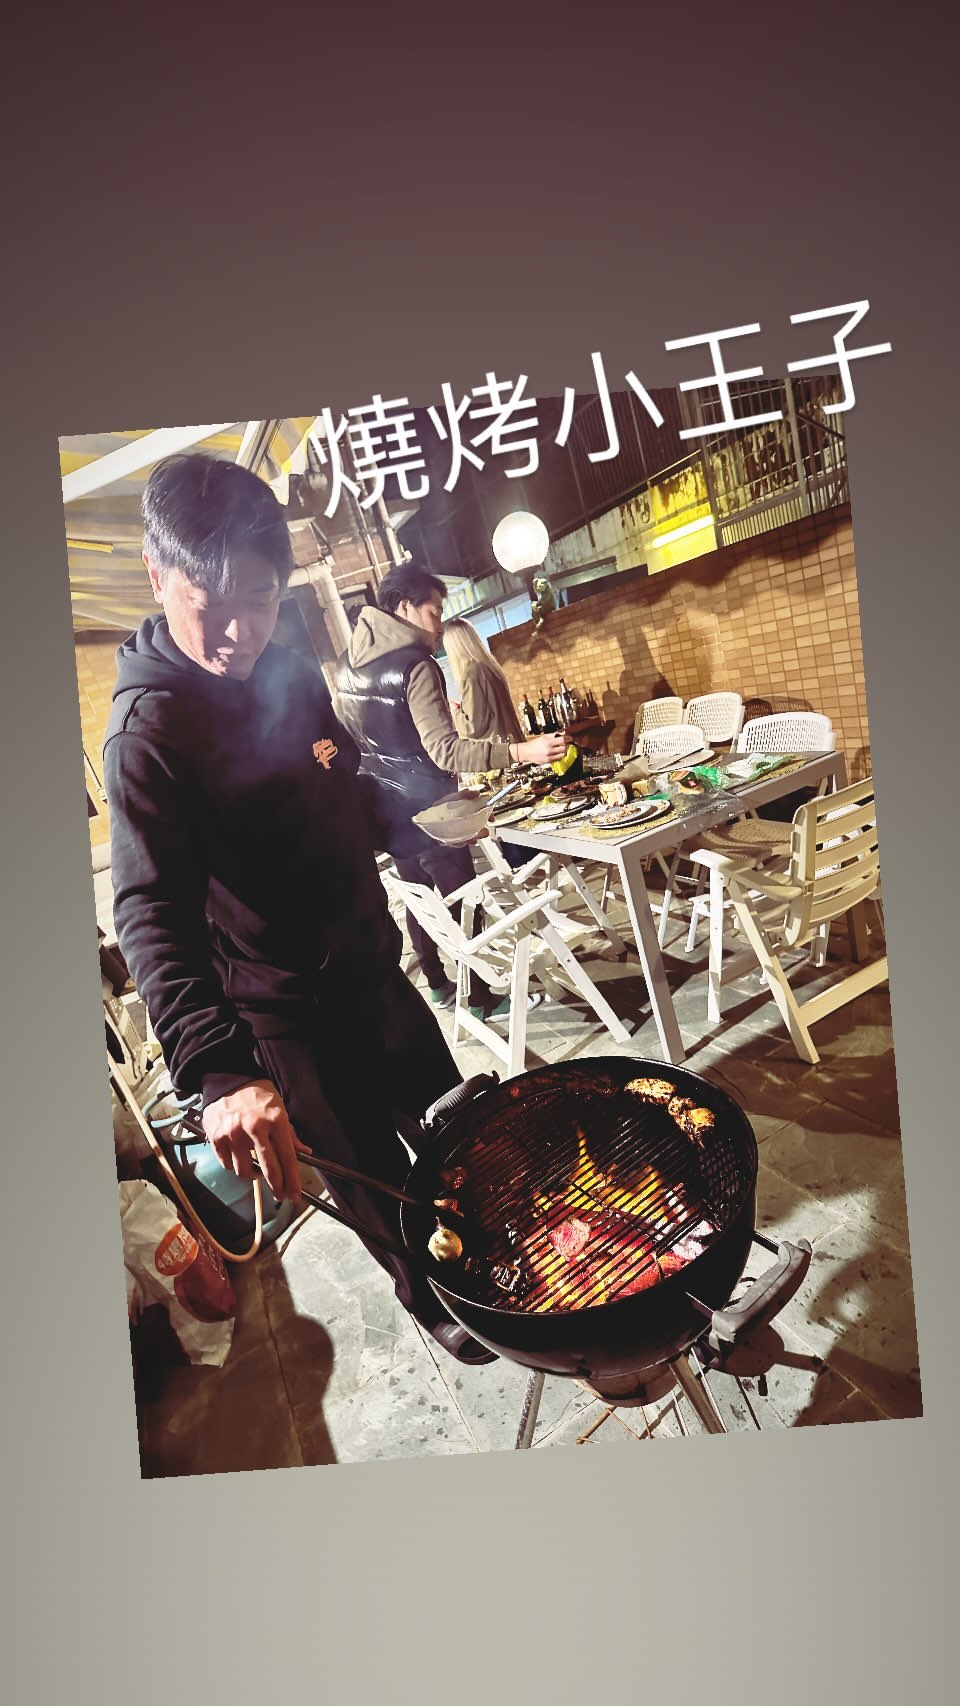 黎淑賢昨晚在IG貼出一連串燒烤的照片。